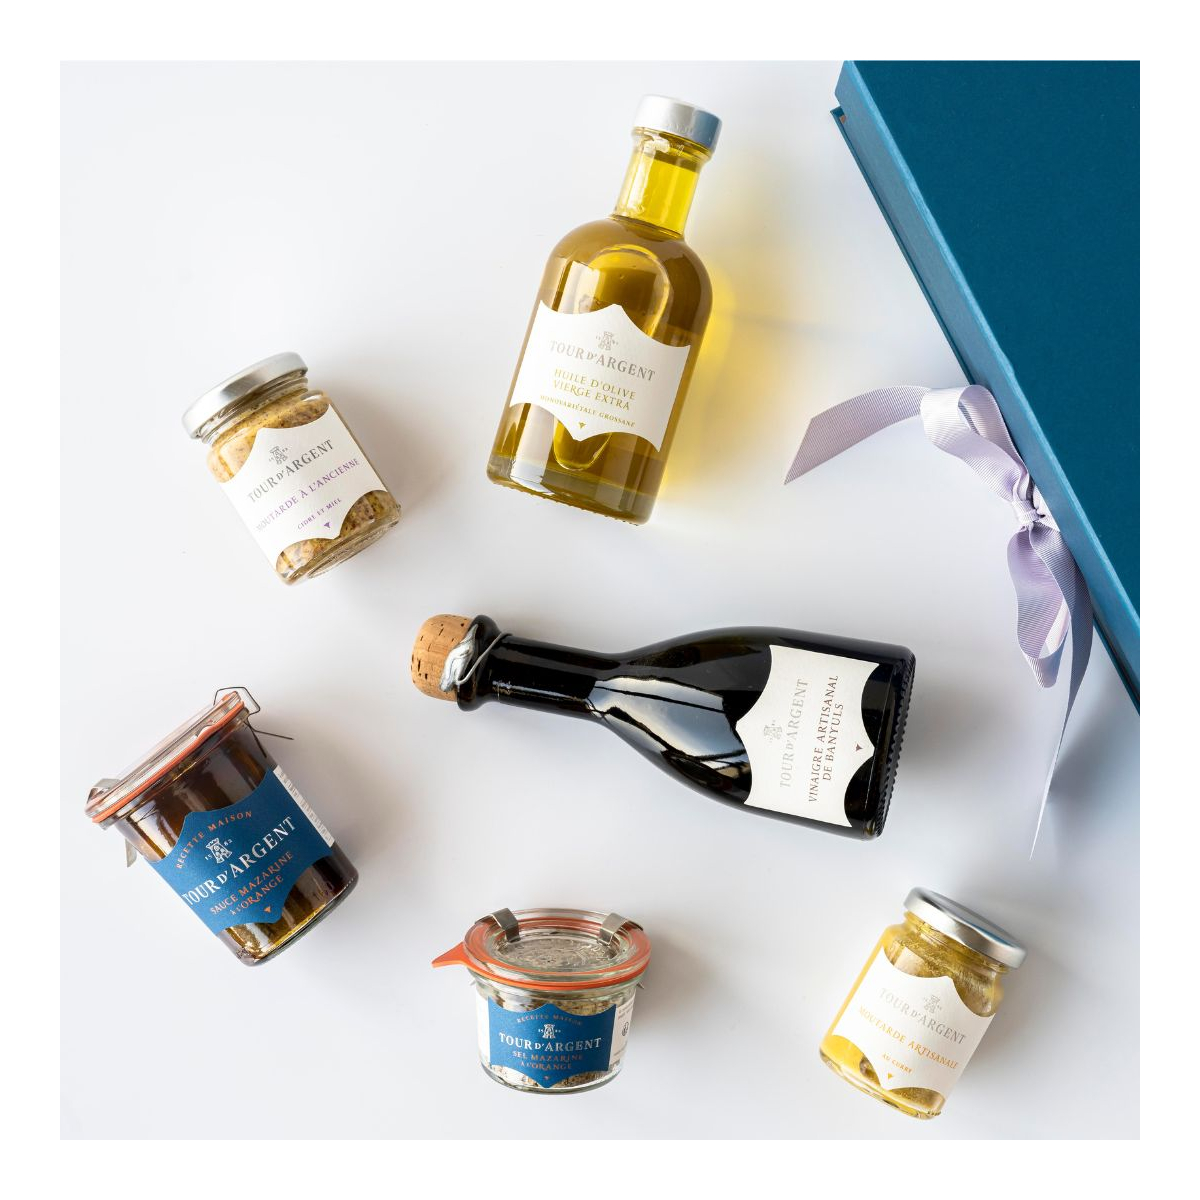 Chef's essentials gift box - L'Épicerie Tour d'Argent